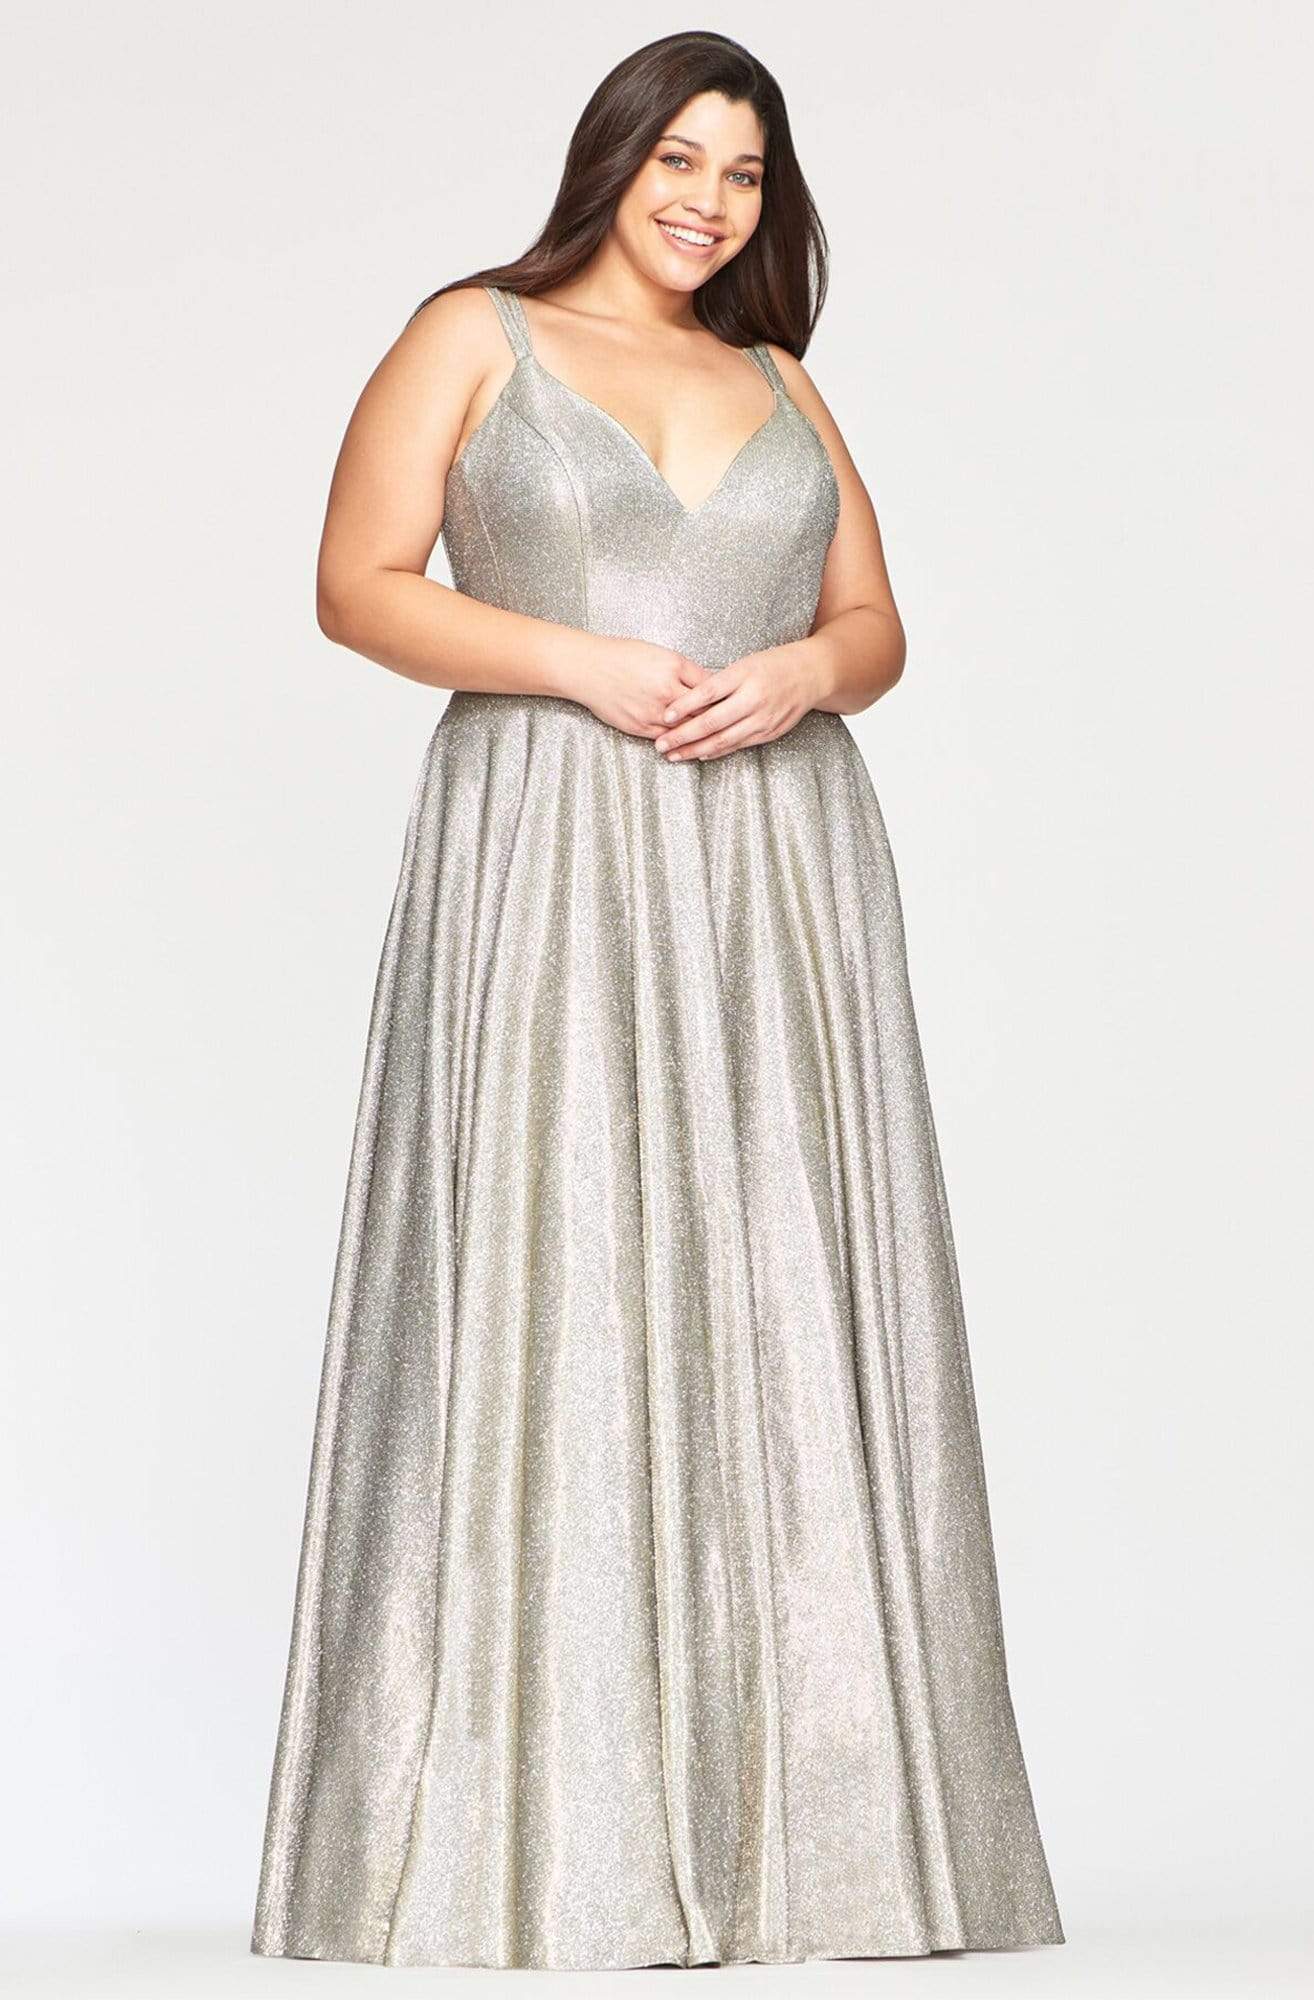 Faviana - 9493 Shiny and Glittered A-line Dress
